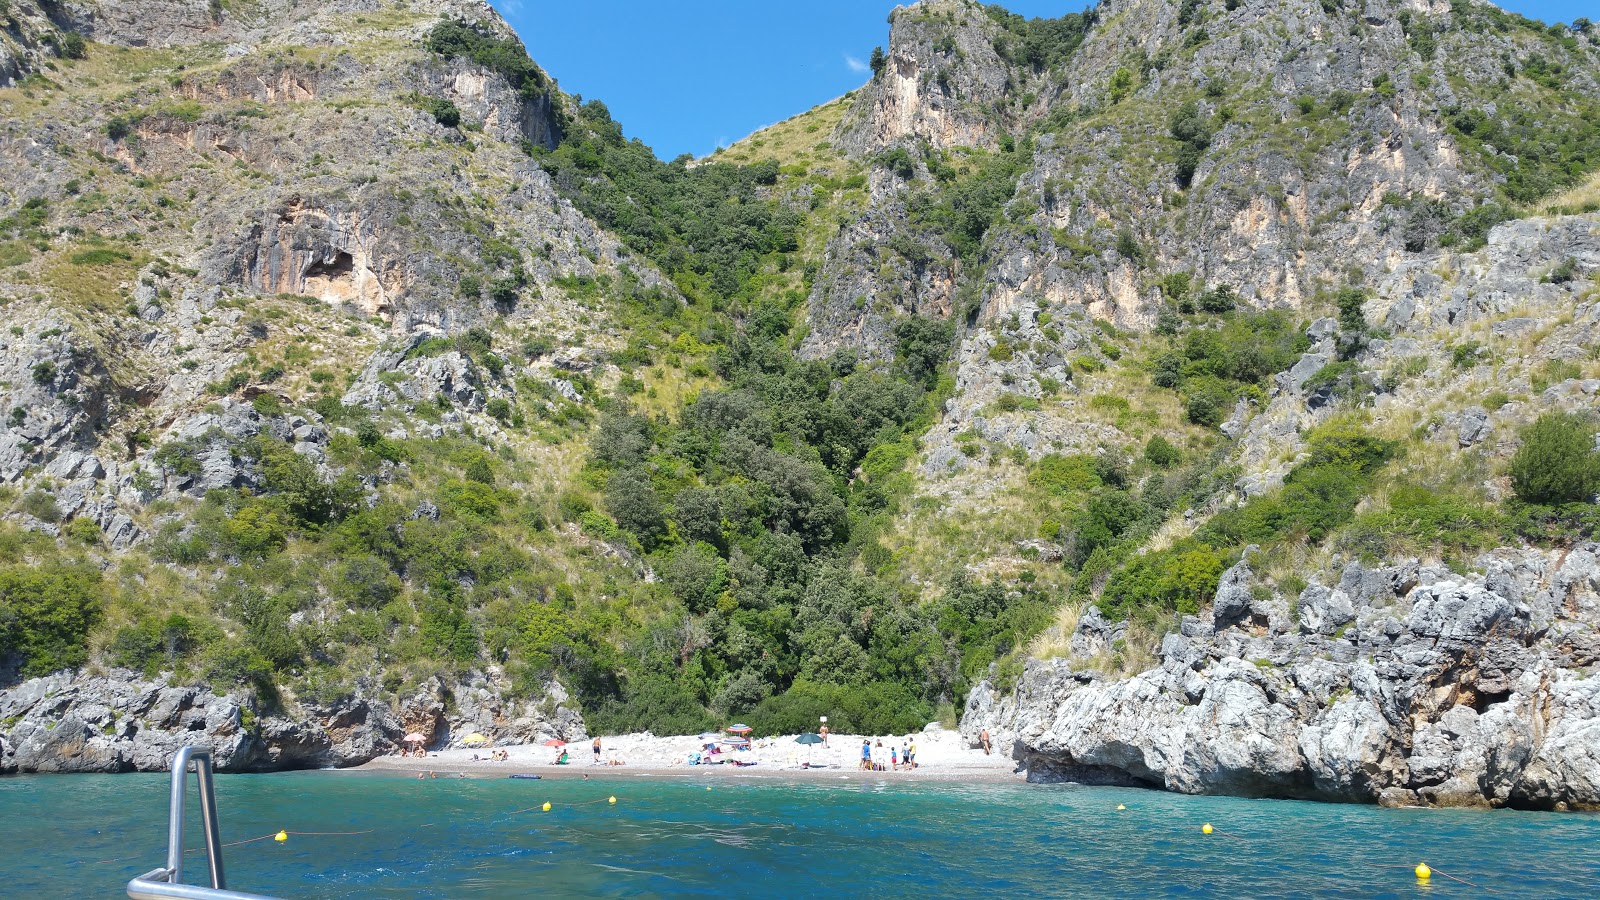 Spiaggia di Cala dei Morti'in fotoğrafı koyu i̇nce çakıl yüzey ile